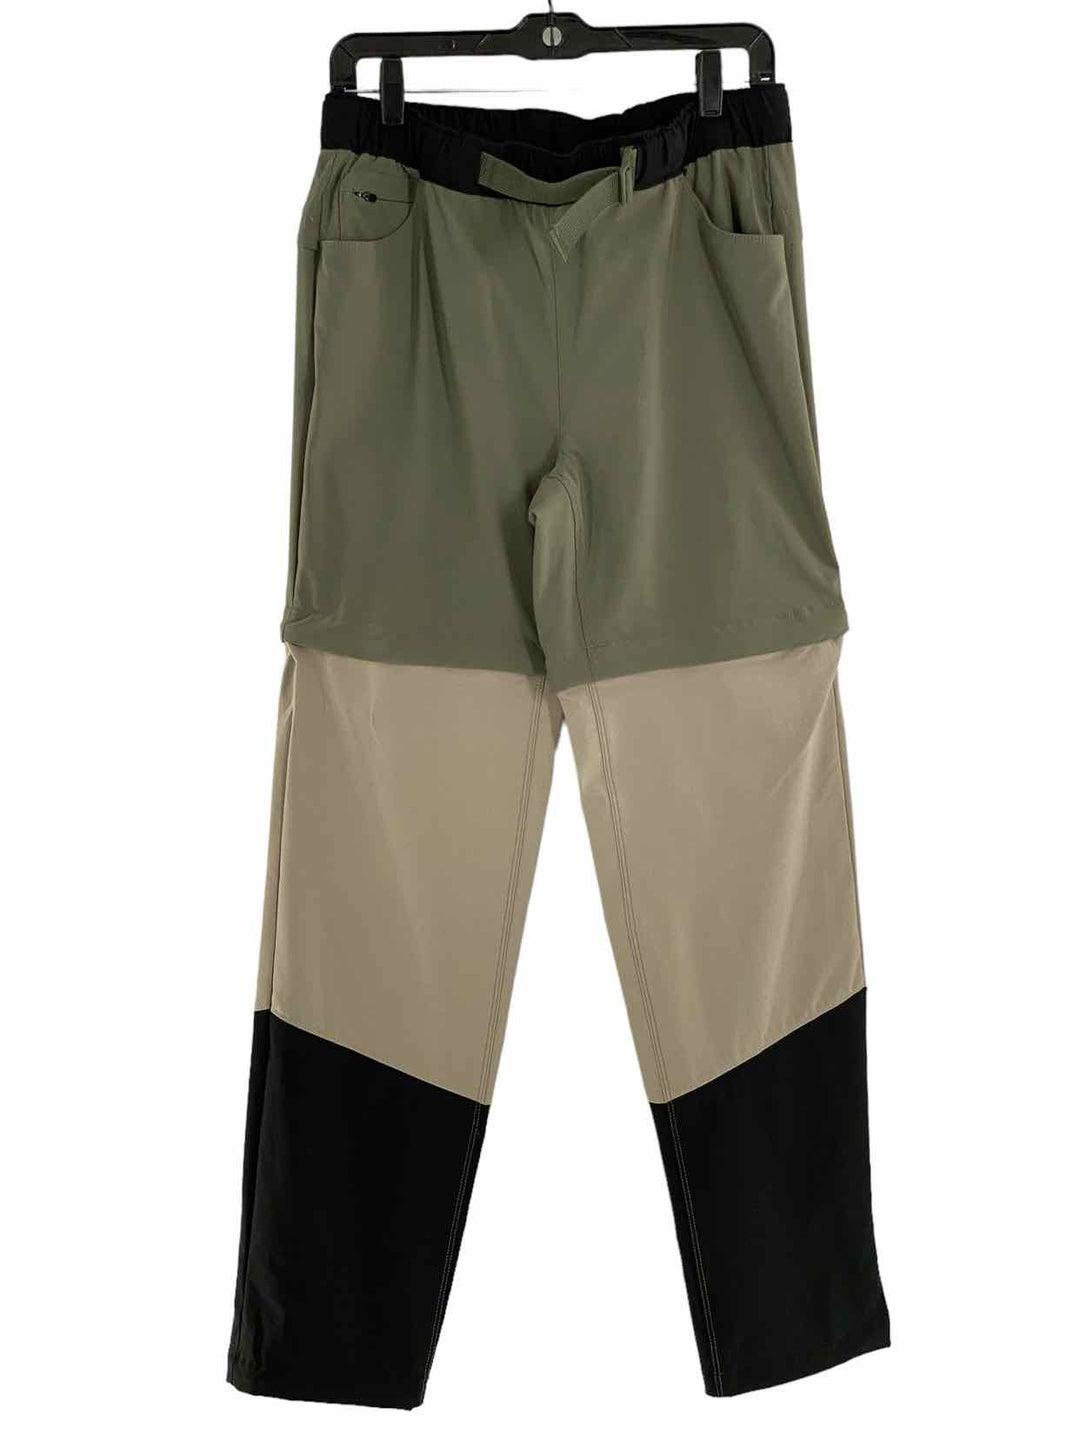 Eddie Bauer Size 8 Green Beige & Black Pants